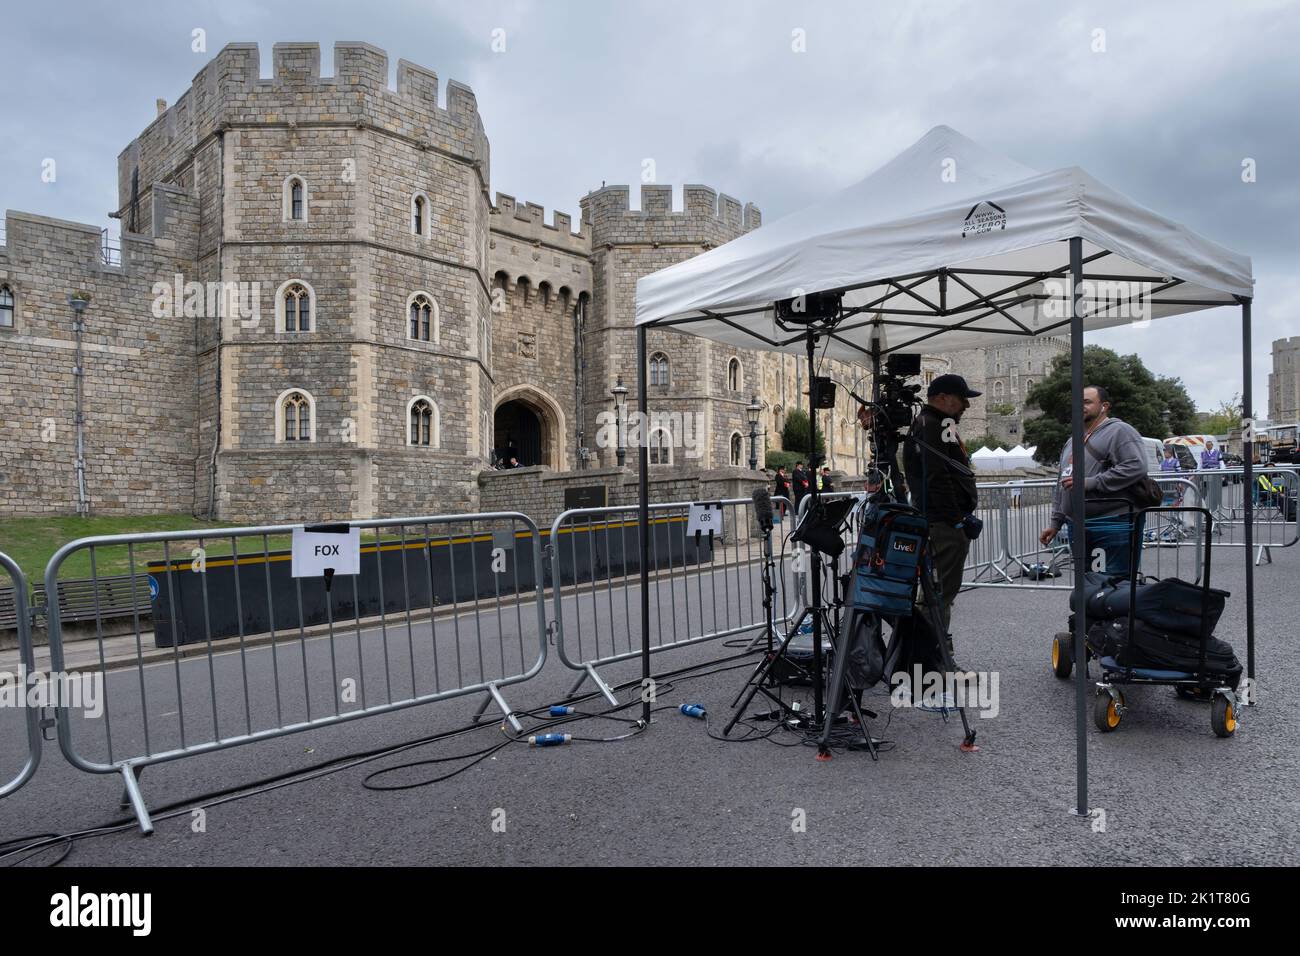 La tripulación de Fox y la estación de televisión CBS preparan su equipo bajo una carpa de fiesta detrás de barreras aplastadas frente al Castillo de Windsor. Reina de la Muerte Foto de stock